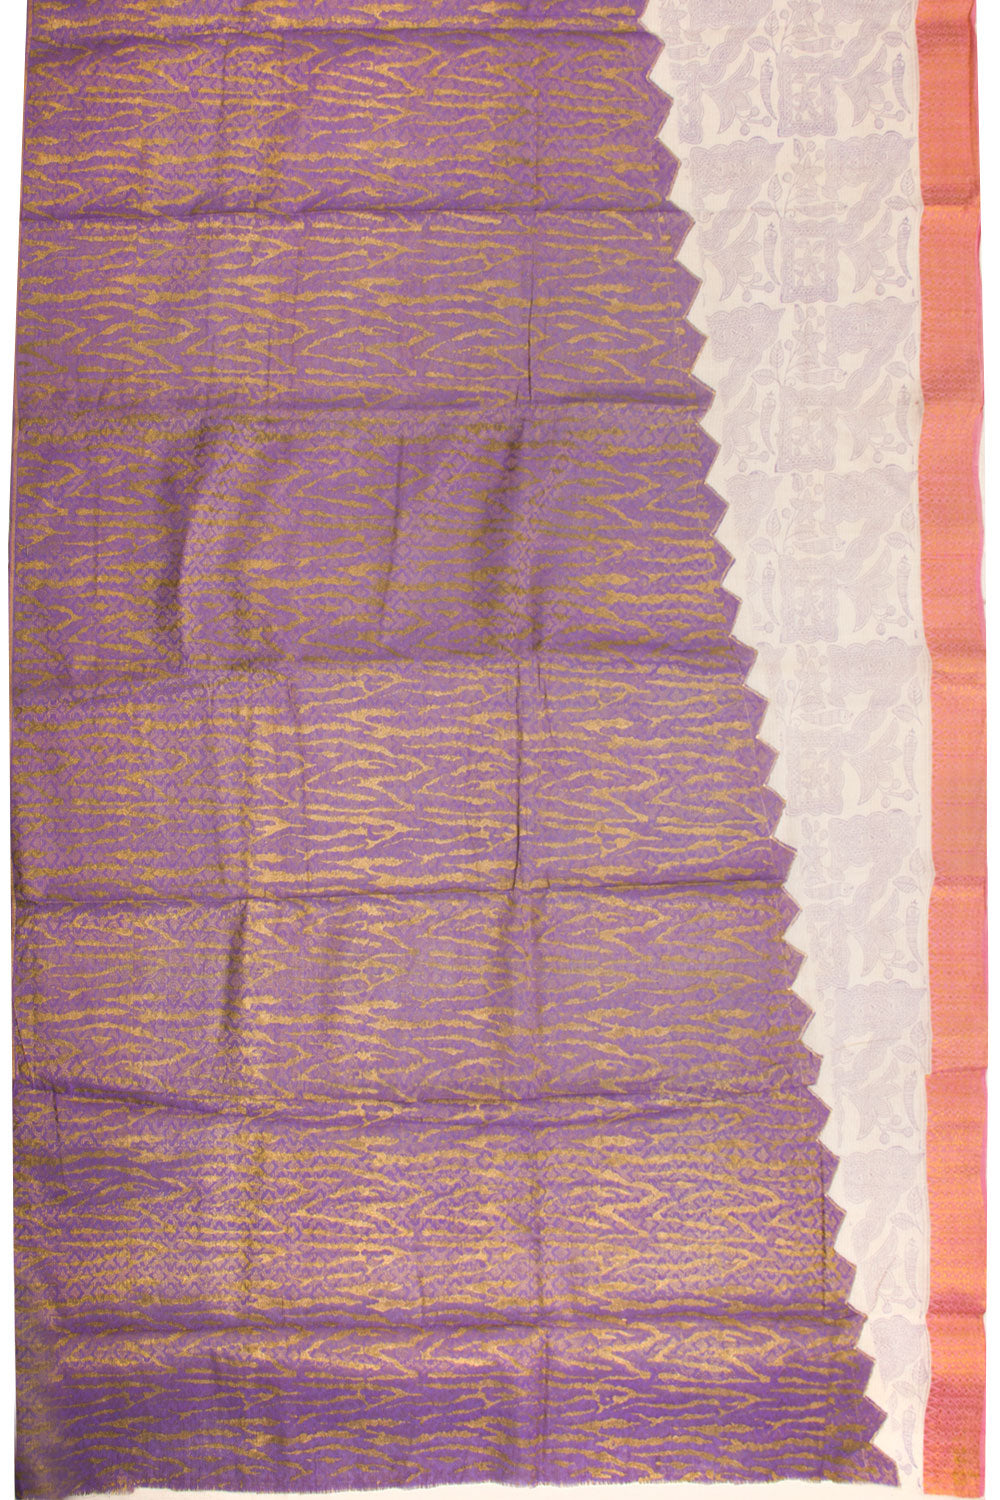 Purple Hand Block Brocode Dhaniakhali Cotton Saree 10068903 - Avishya